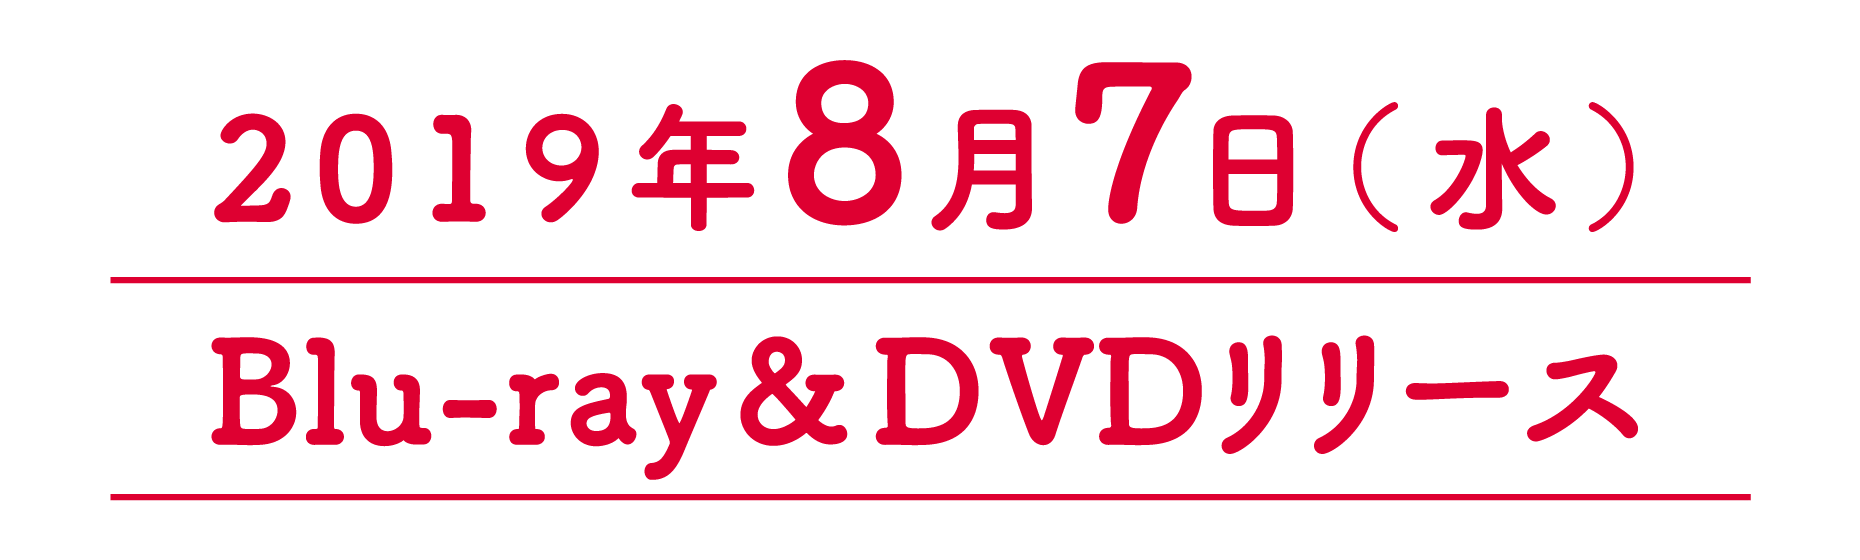 2019年8月7日(水)Blu-ray&DVDリリース